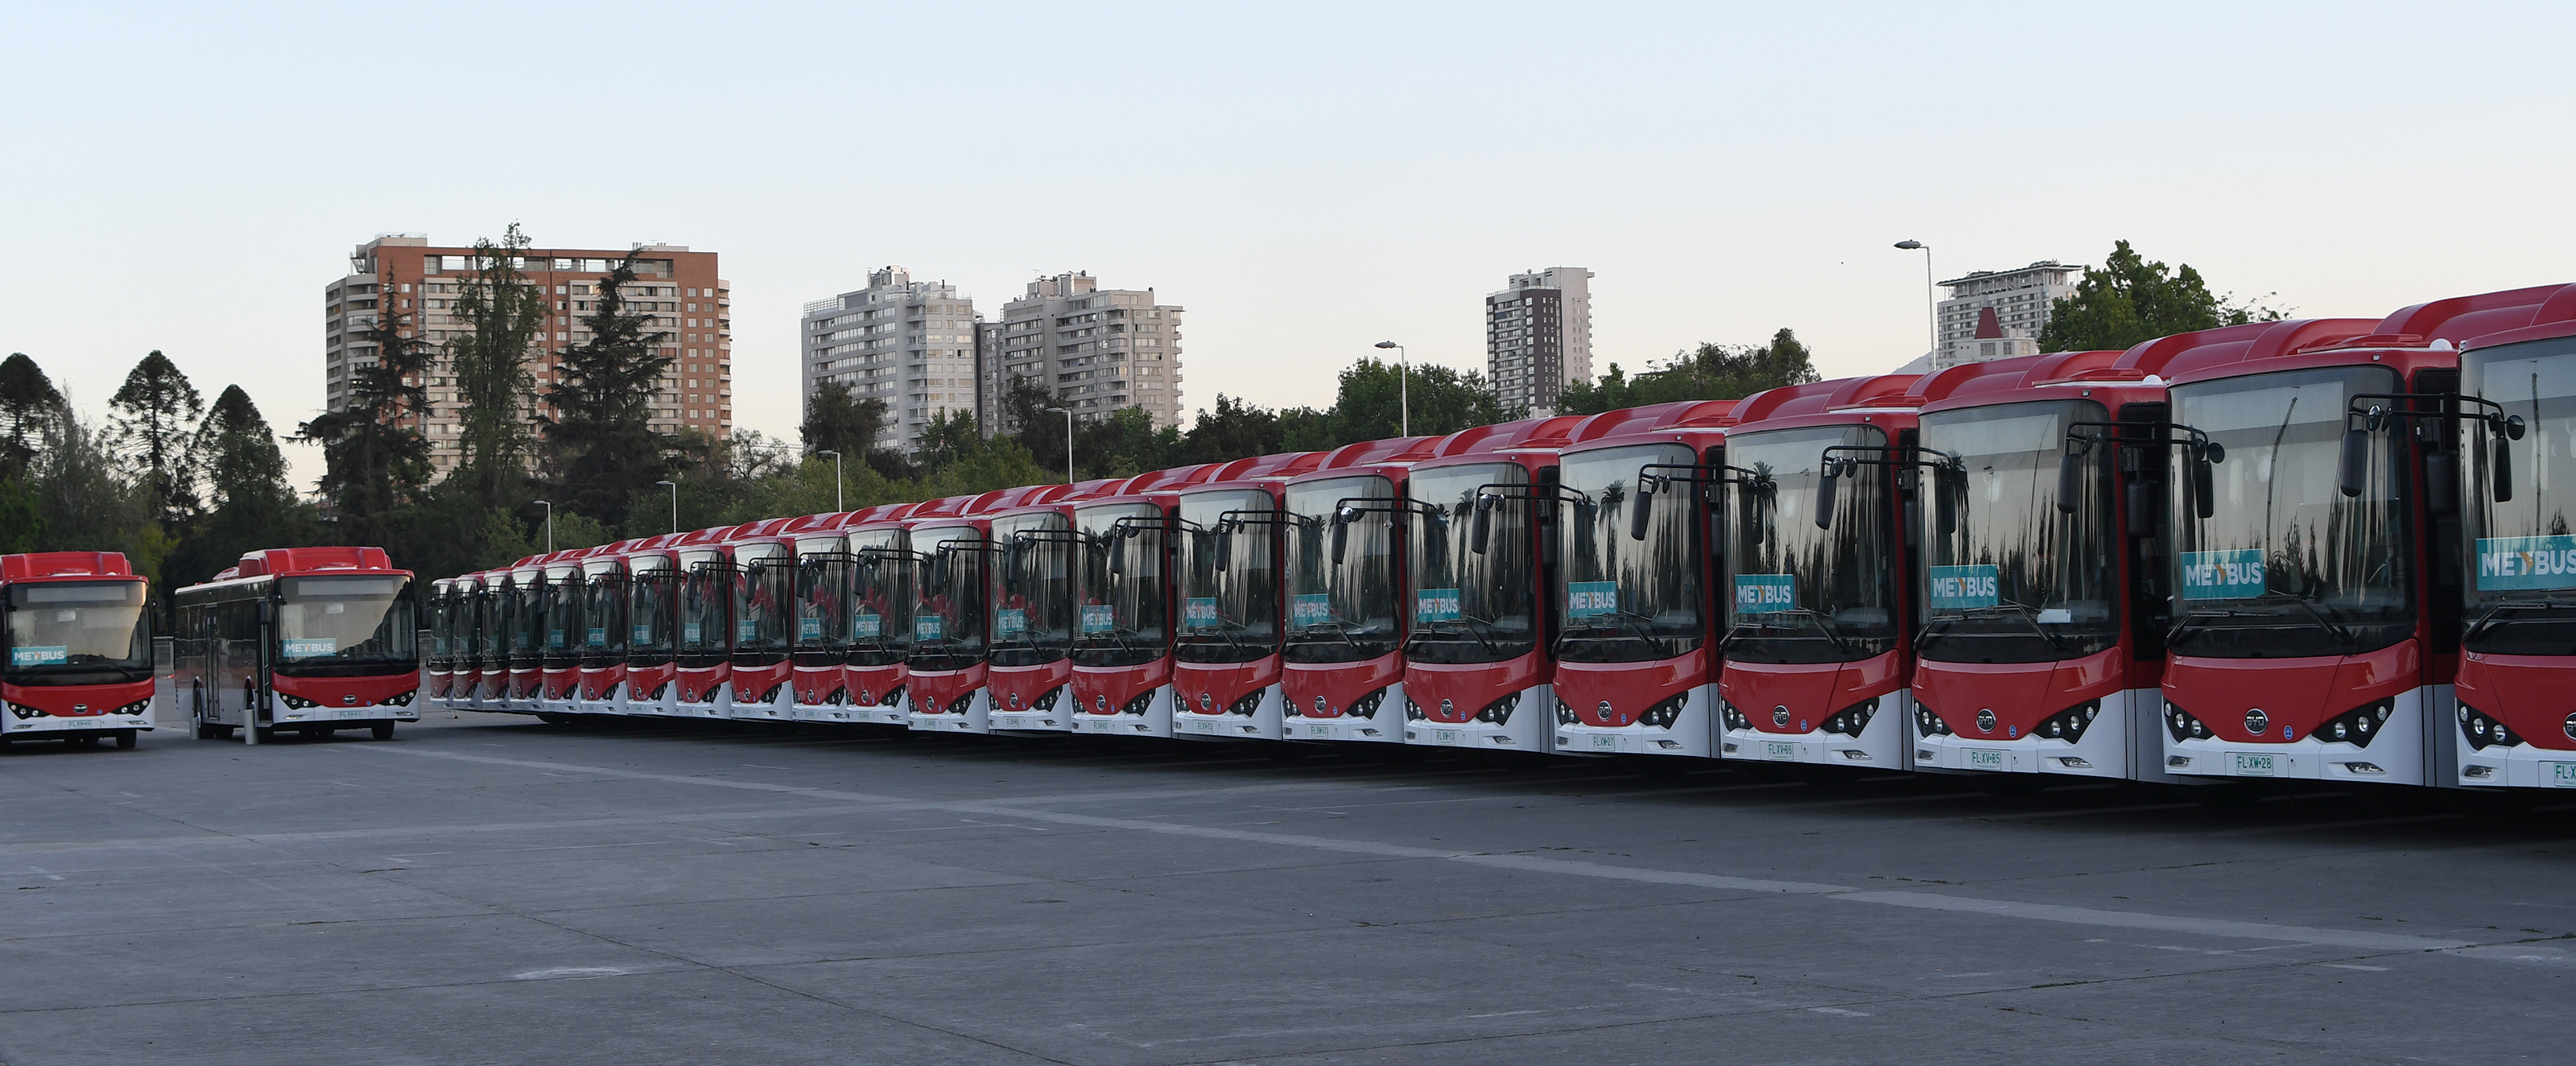 Santiago, segunda ciudad con más buses eléctricos en el mundo